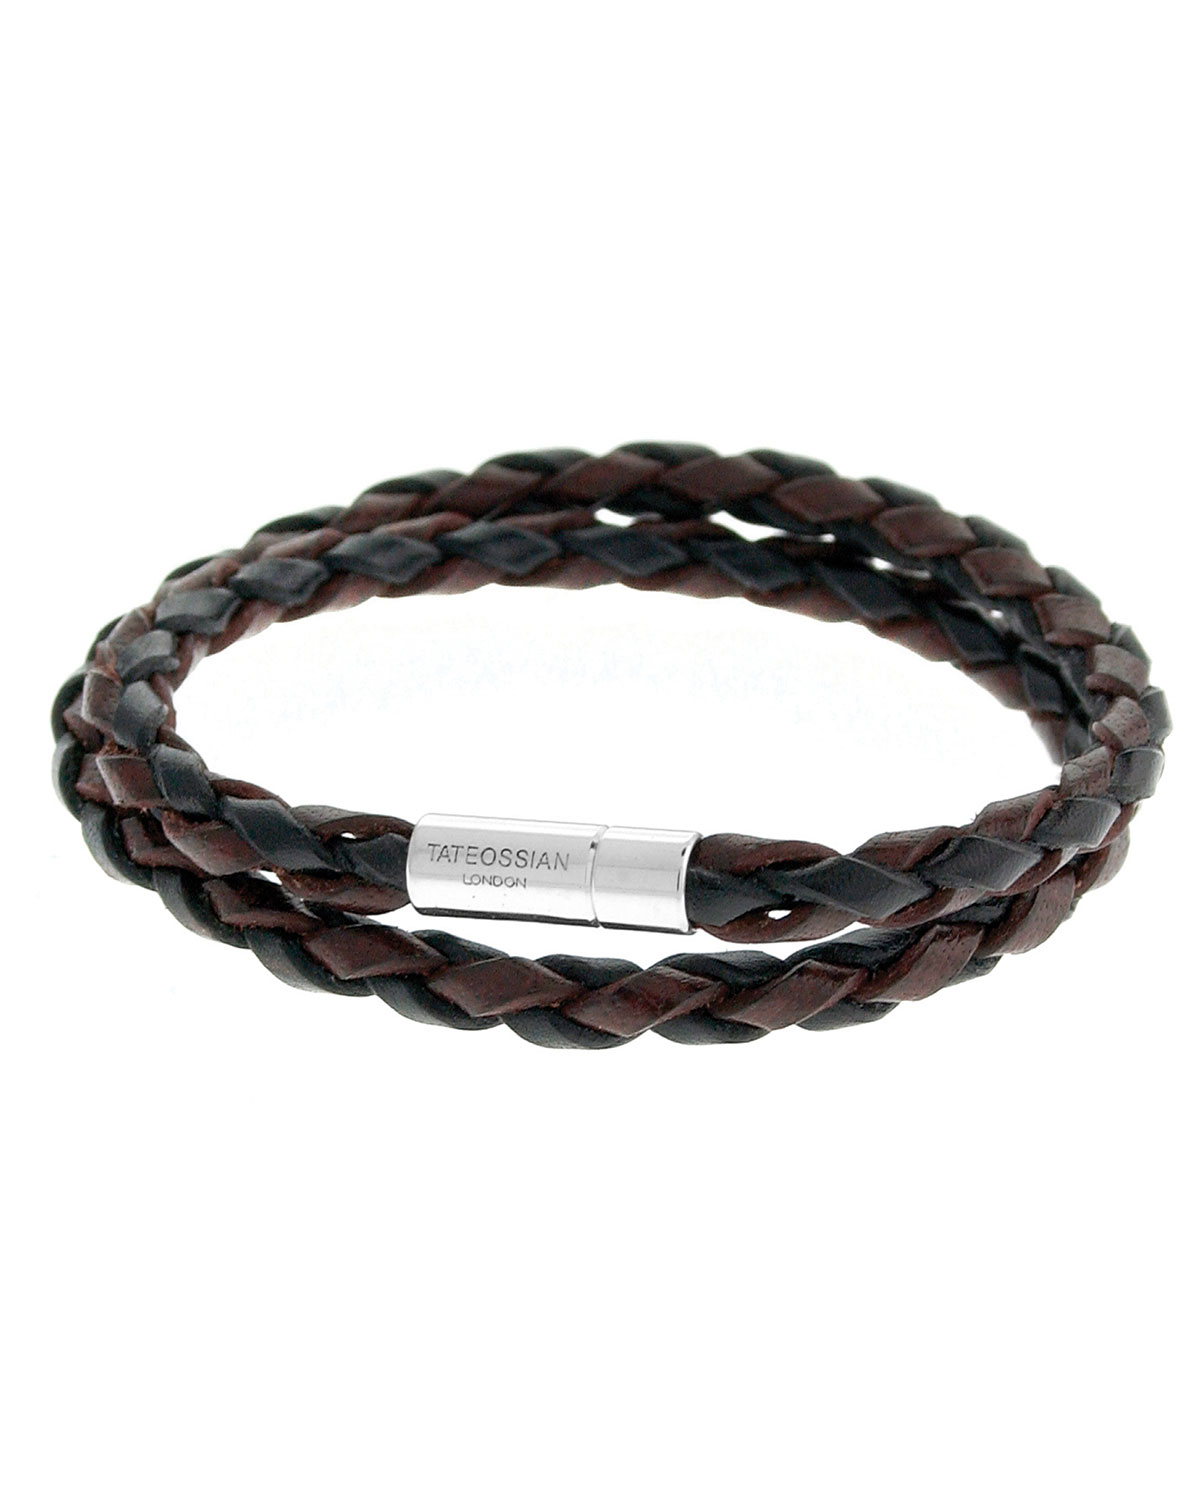 Tateossian men's braided leather double-wrap bracelet in 